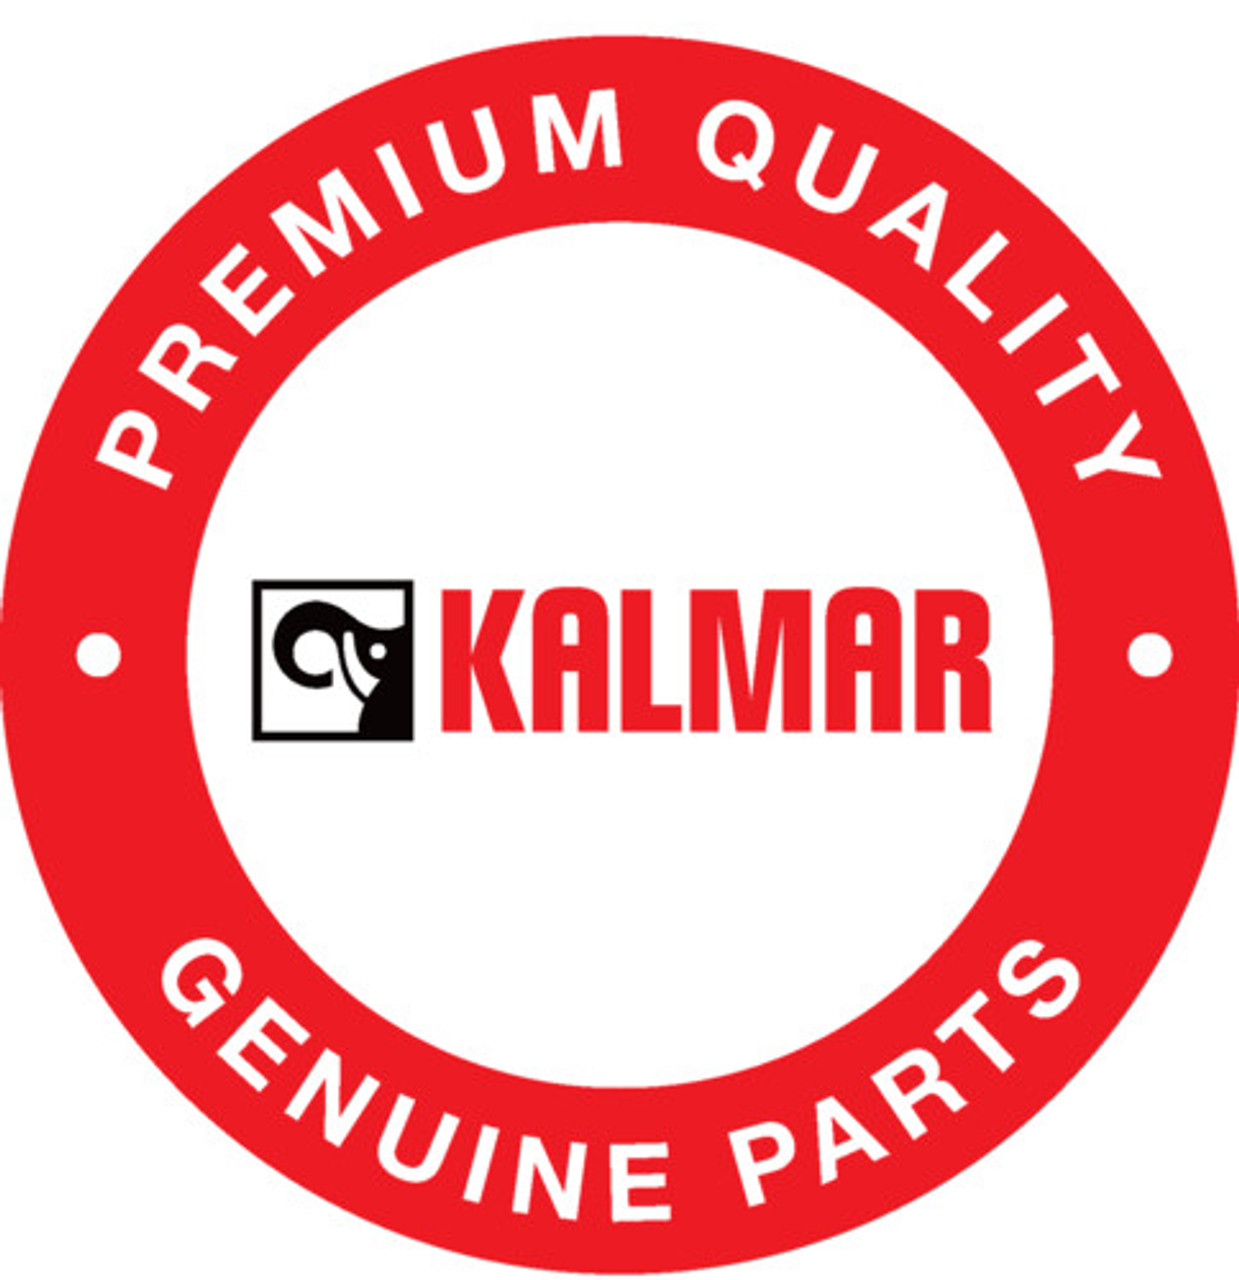 JP101136: Kalmar® Printed Circuit Board